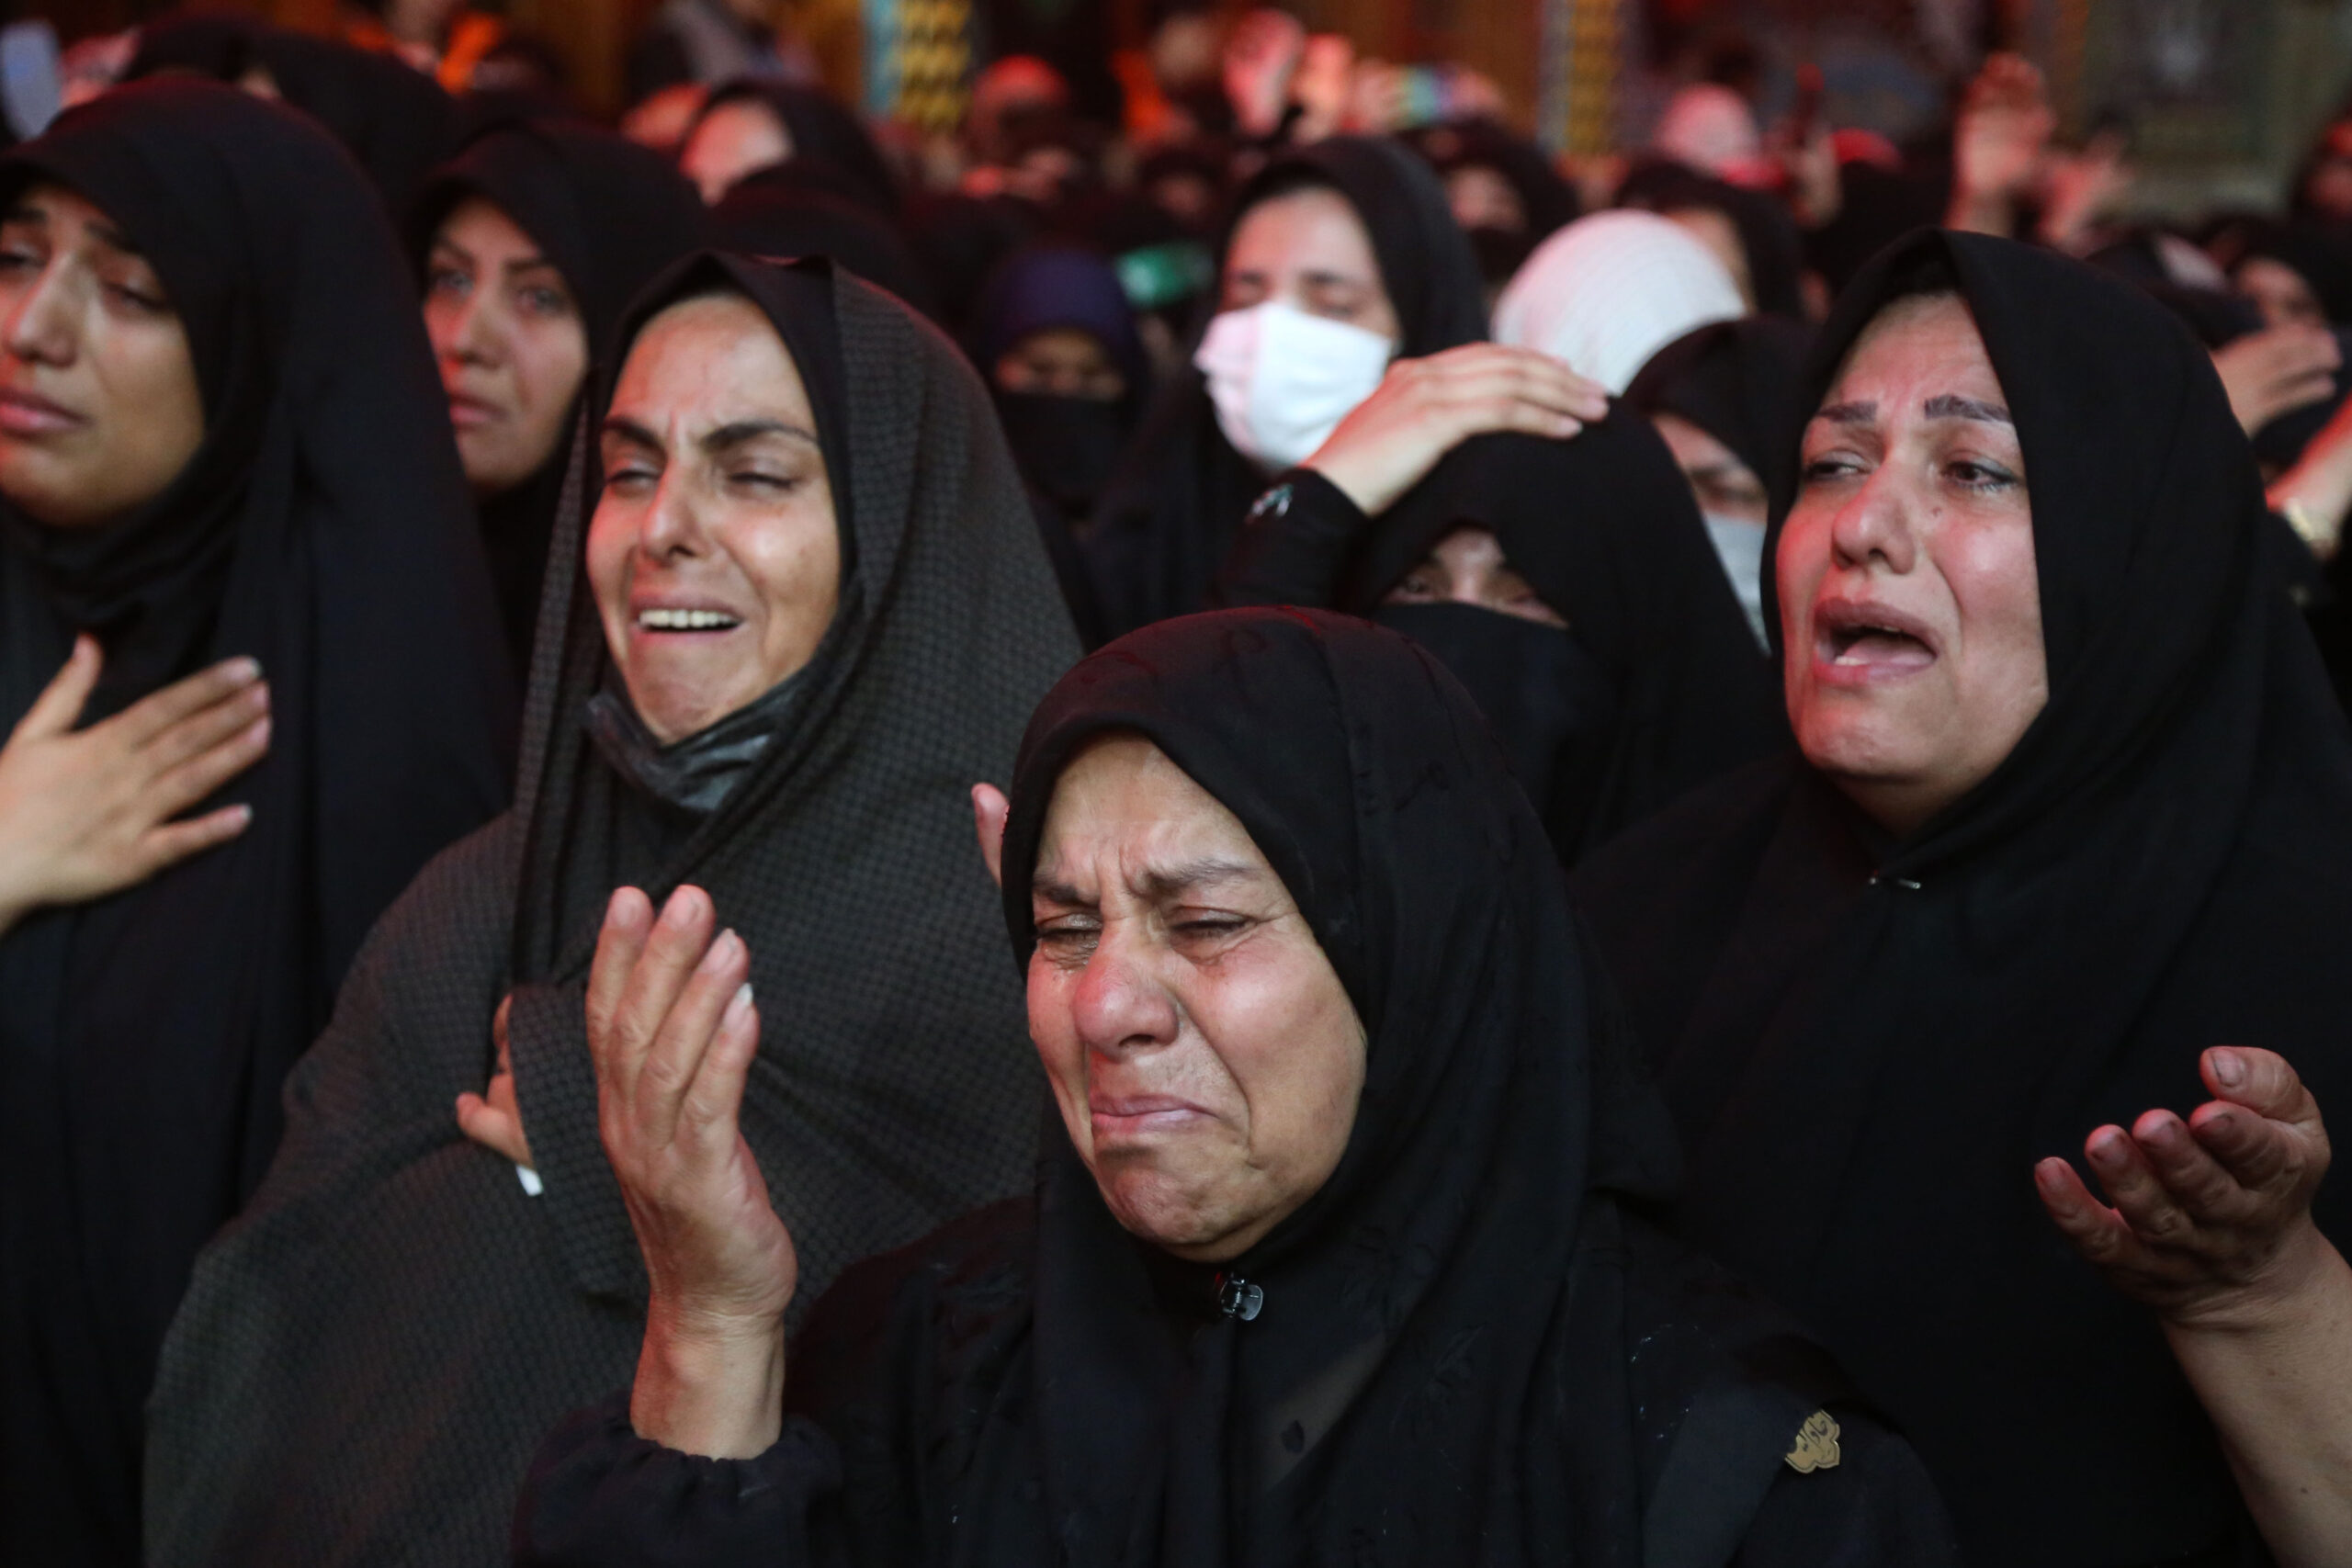 21 million Shiites mark Arbaeen in Iraq